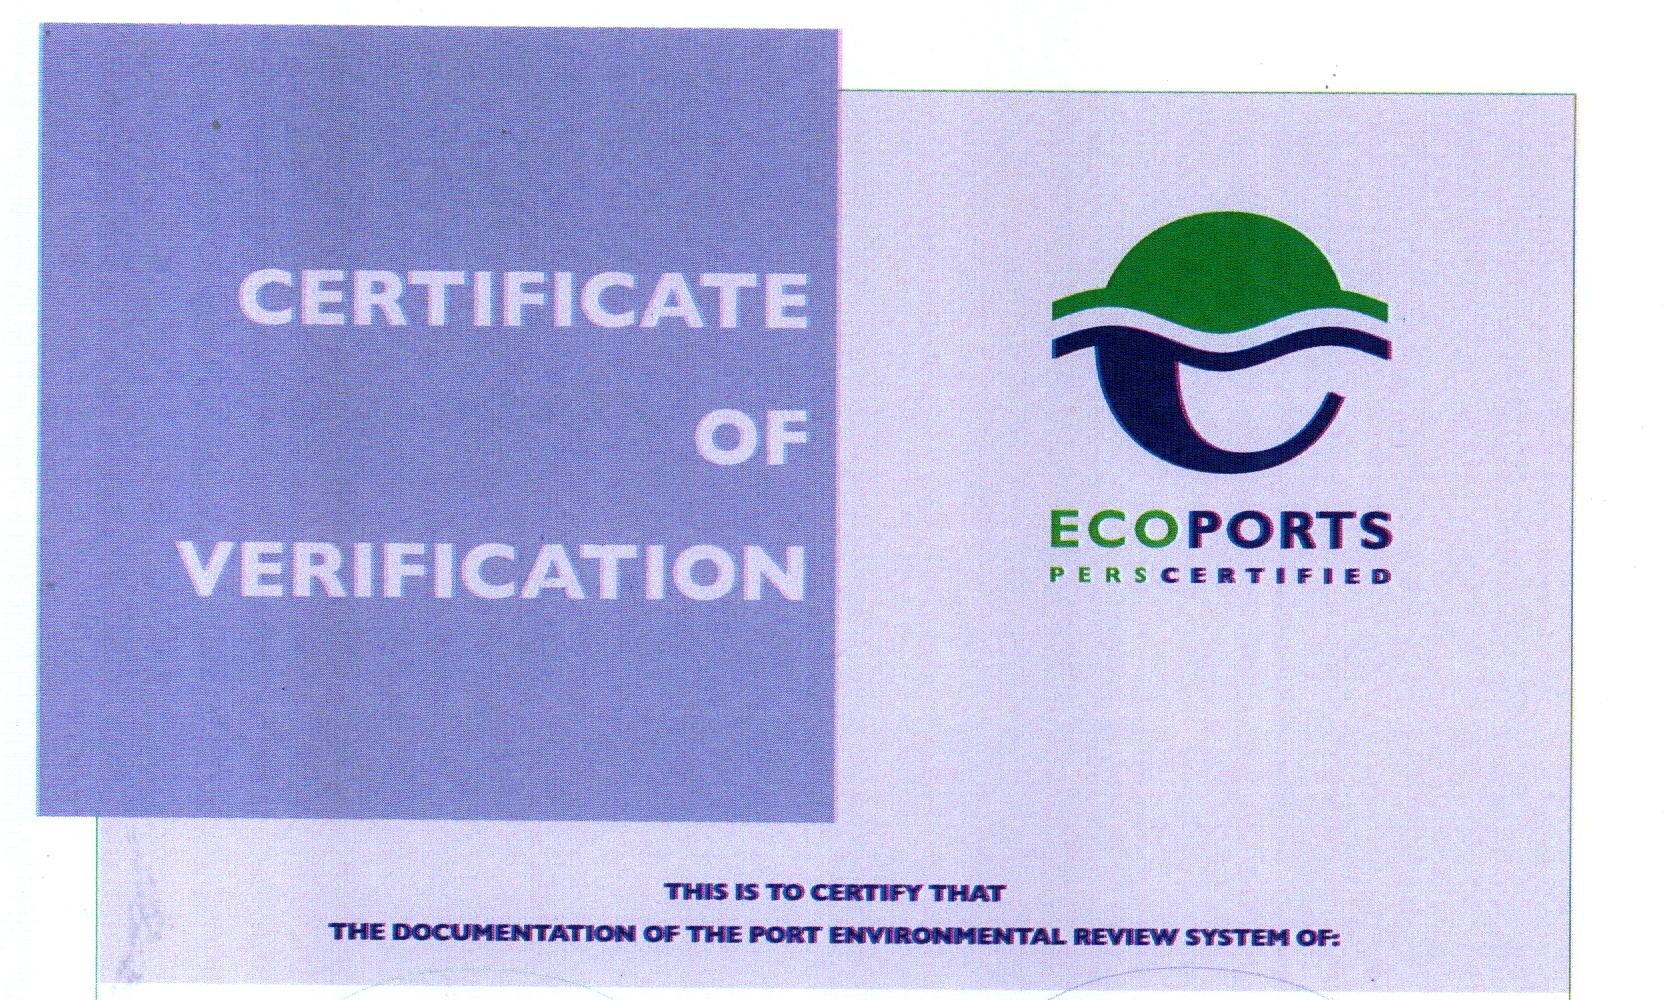 ANP obtuvo la recertificación ambiental internacional EcoPorts